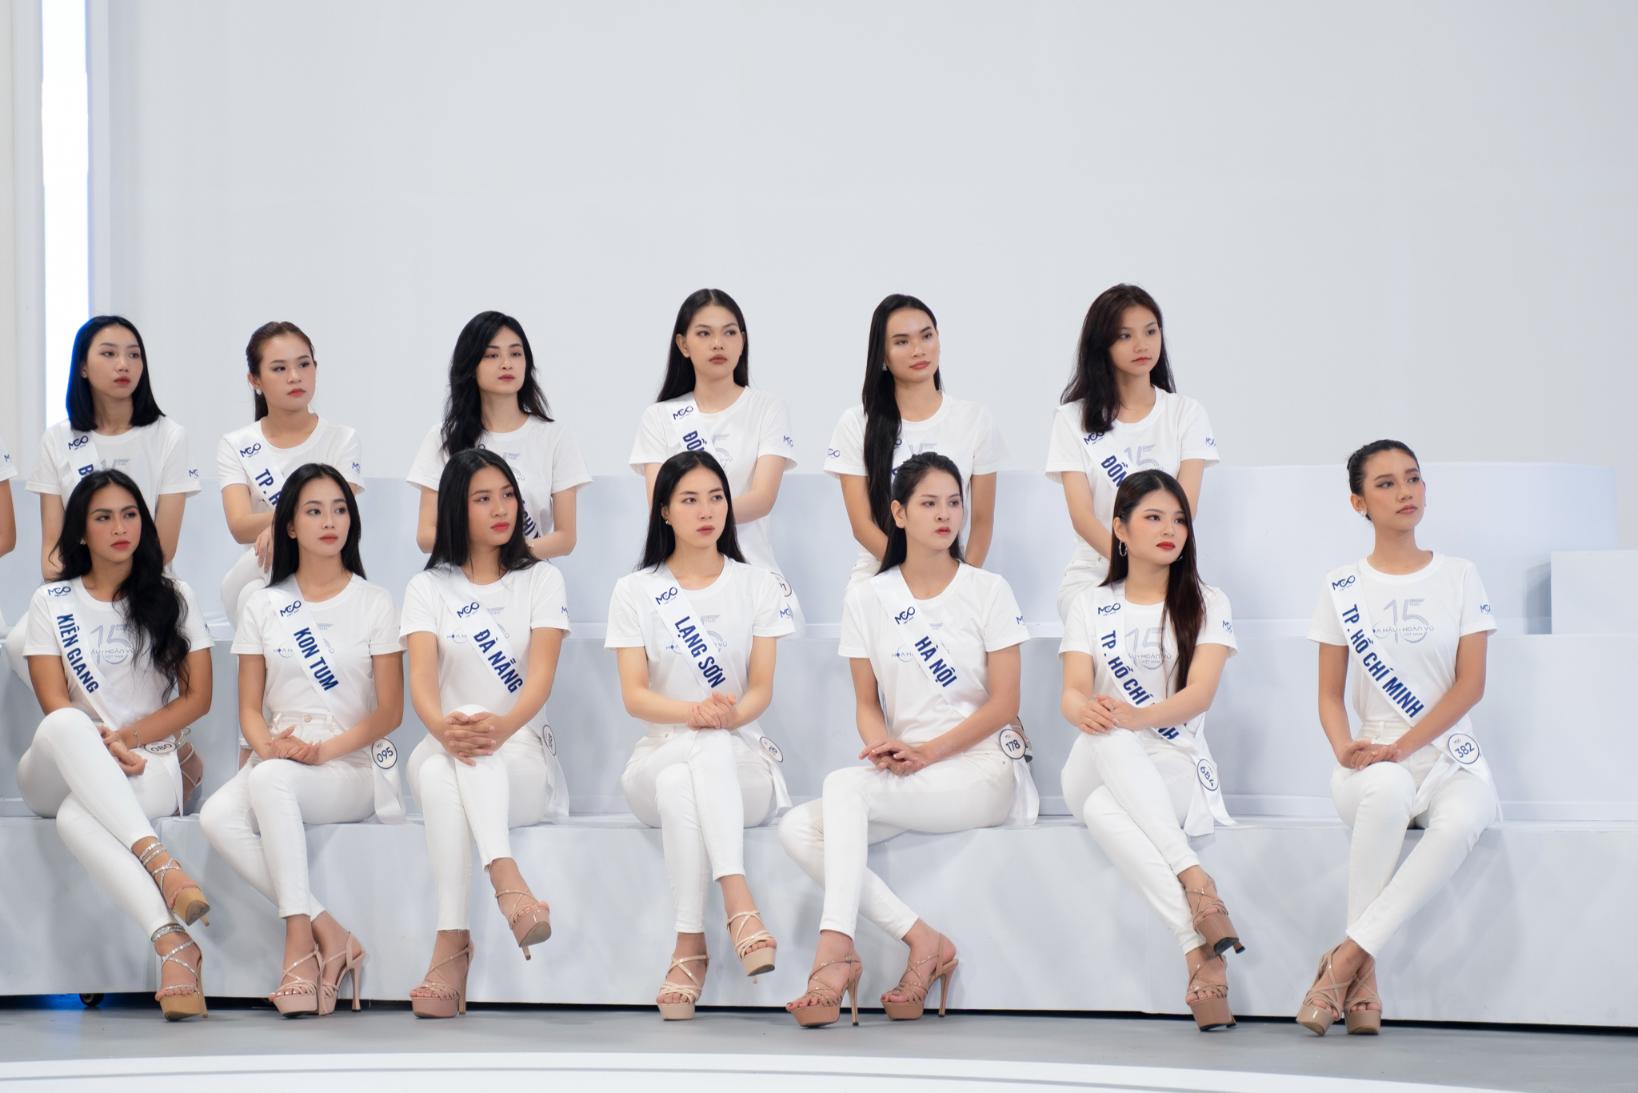 hhhvvn 2.1 “Tủ thuốc cho em”   Hành trình ý nghĩa của top 55 Hoa hậu Hoàn vũ Việt Nam 2023